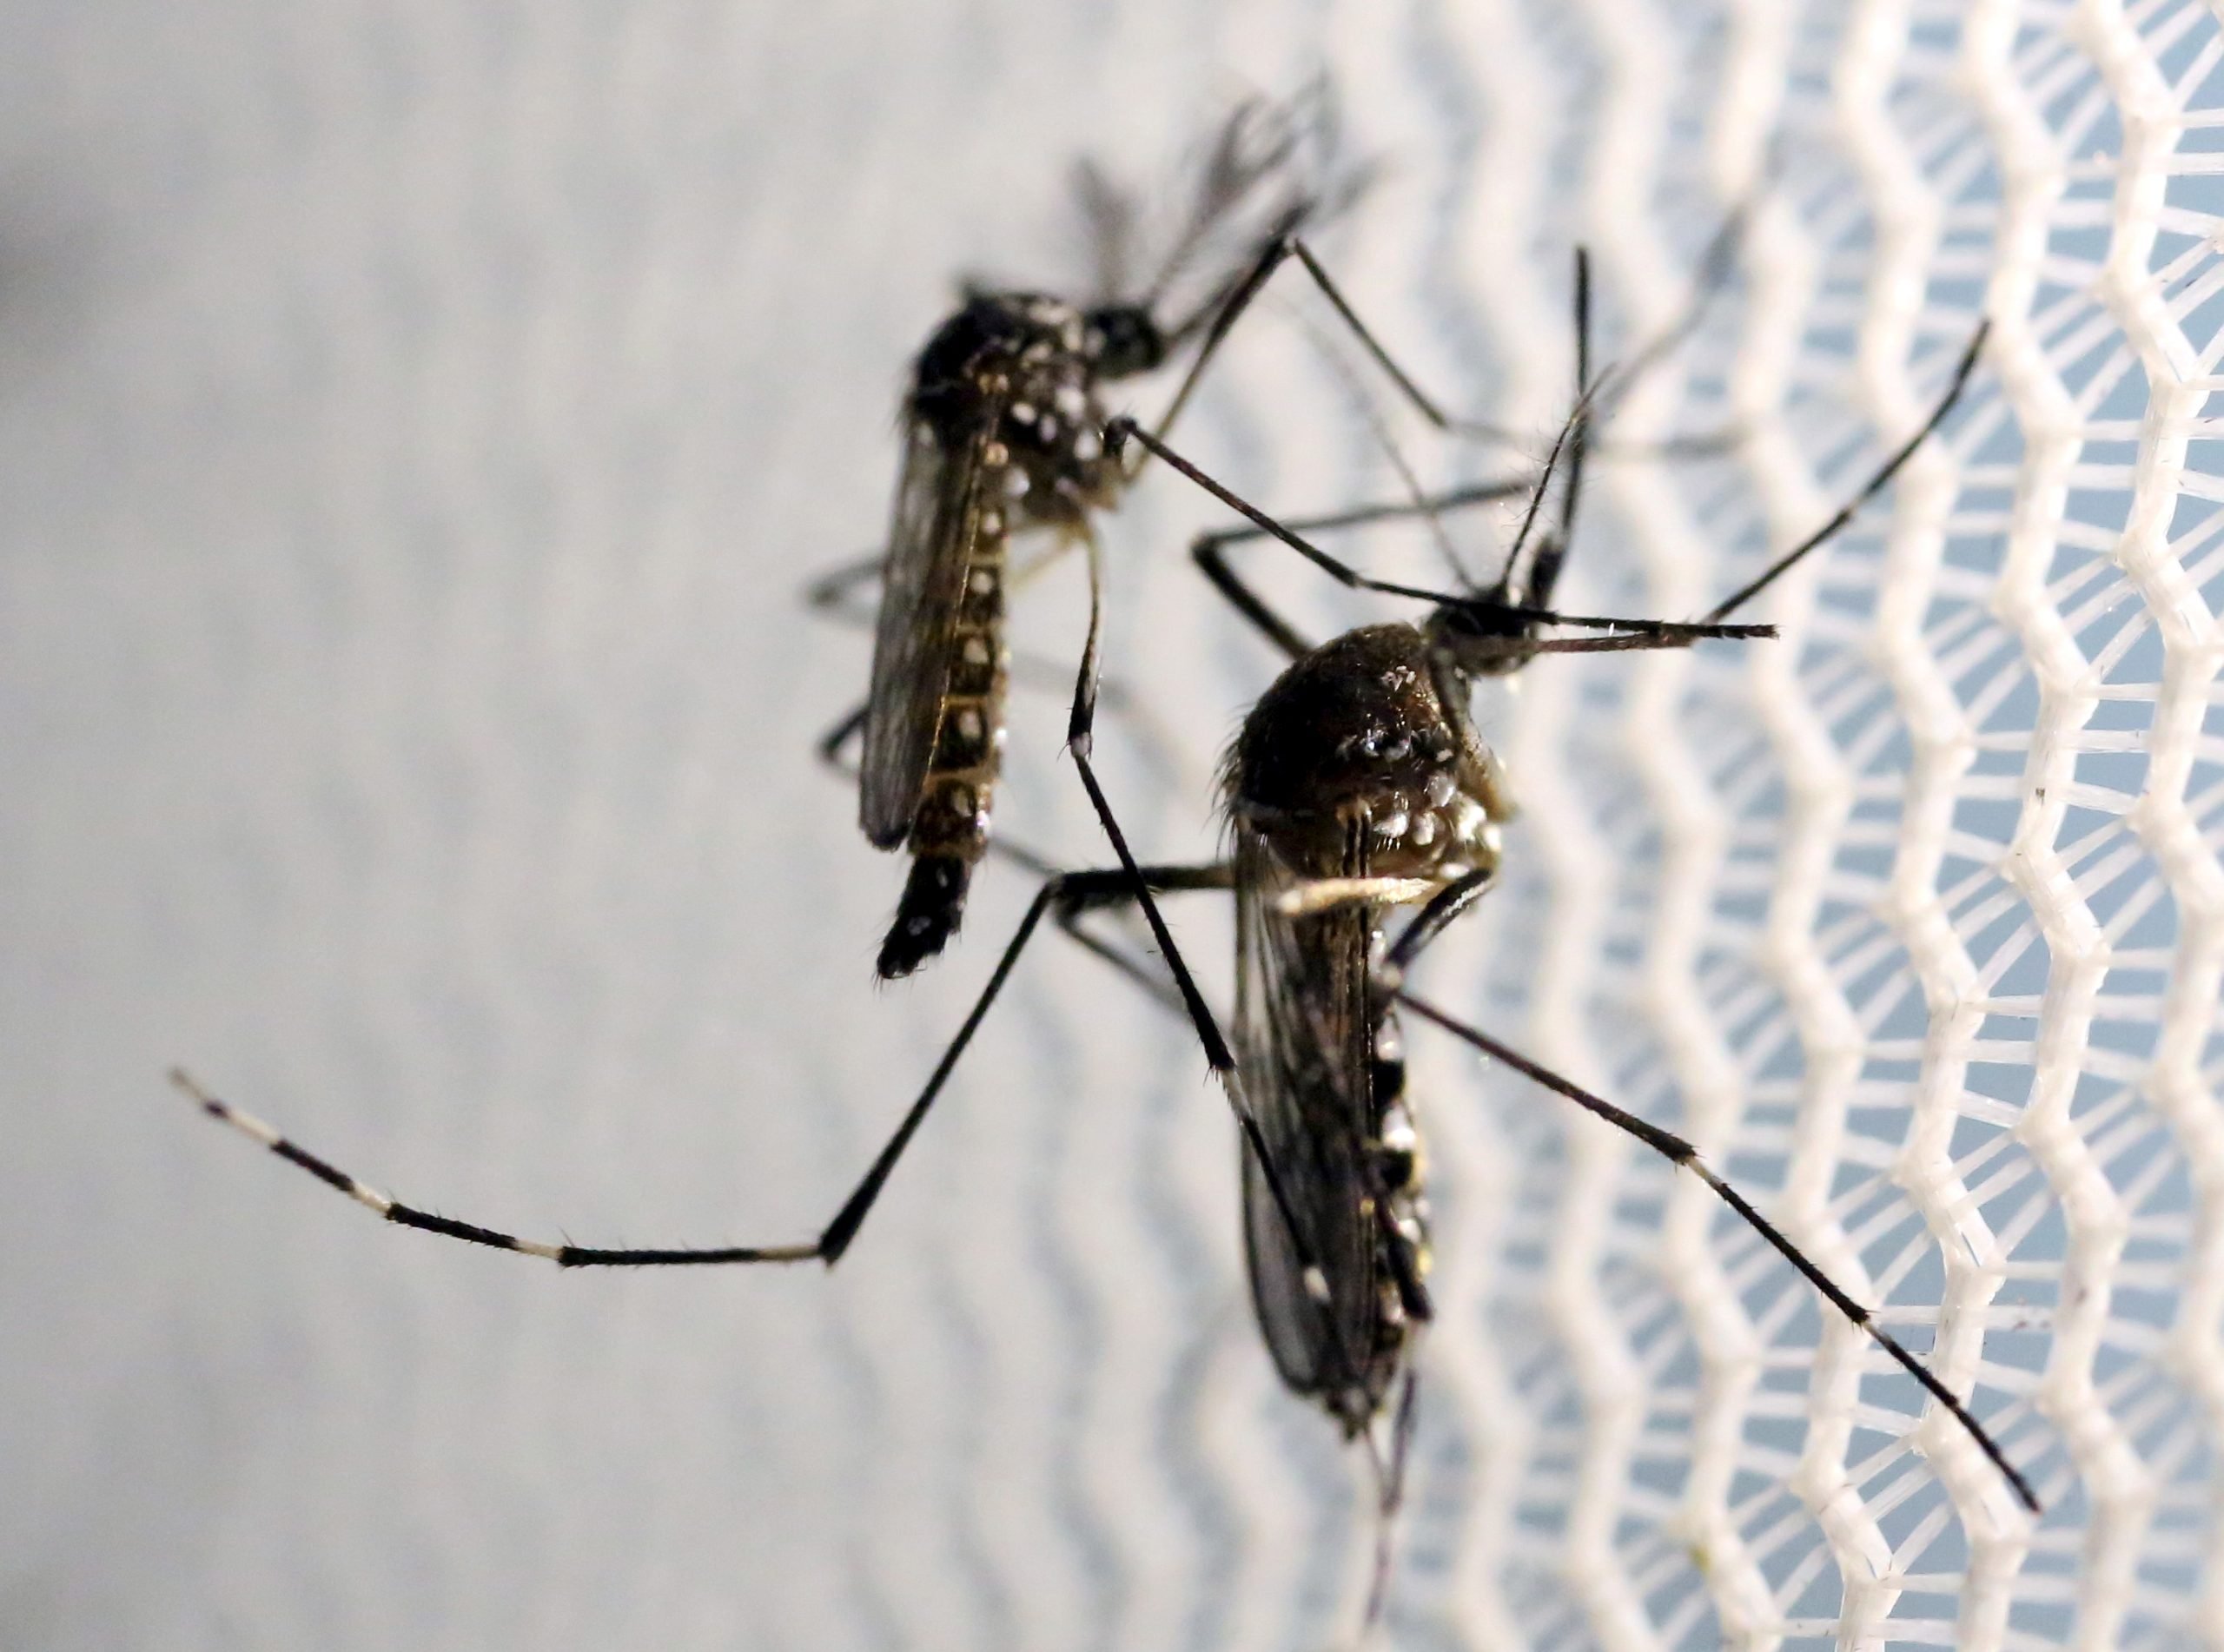 Plus de femmes enceintes infectées par Zika en Norvège - 3